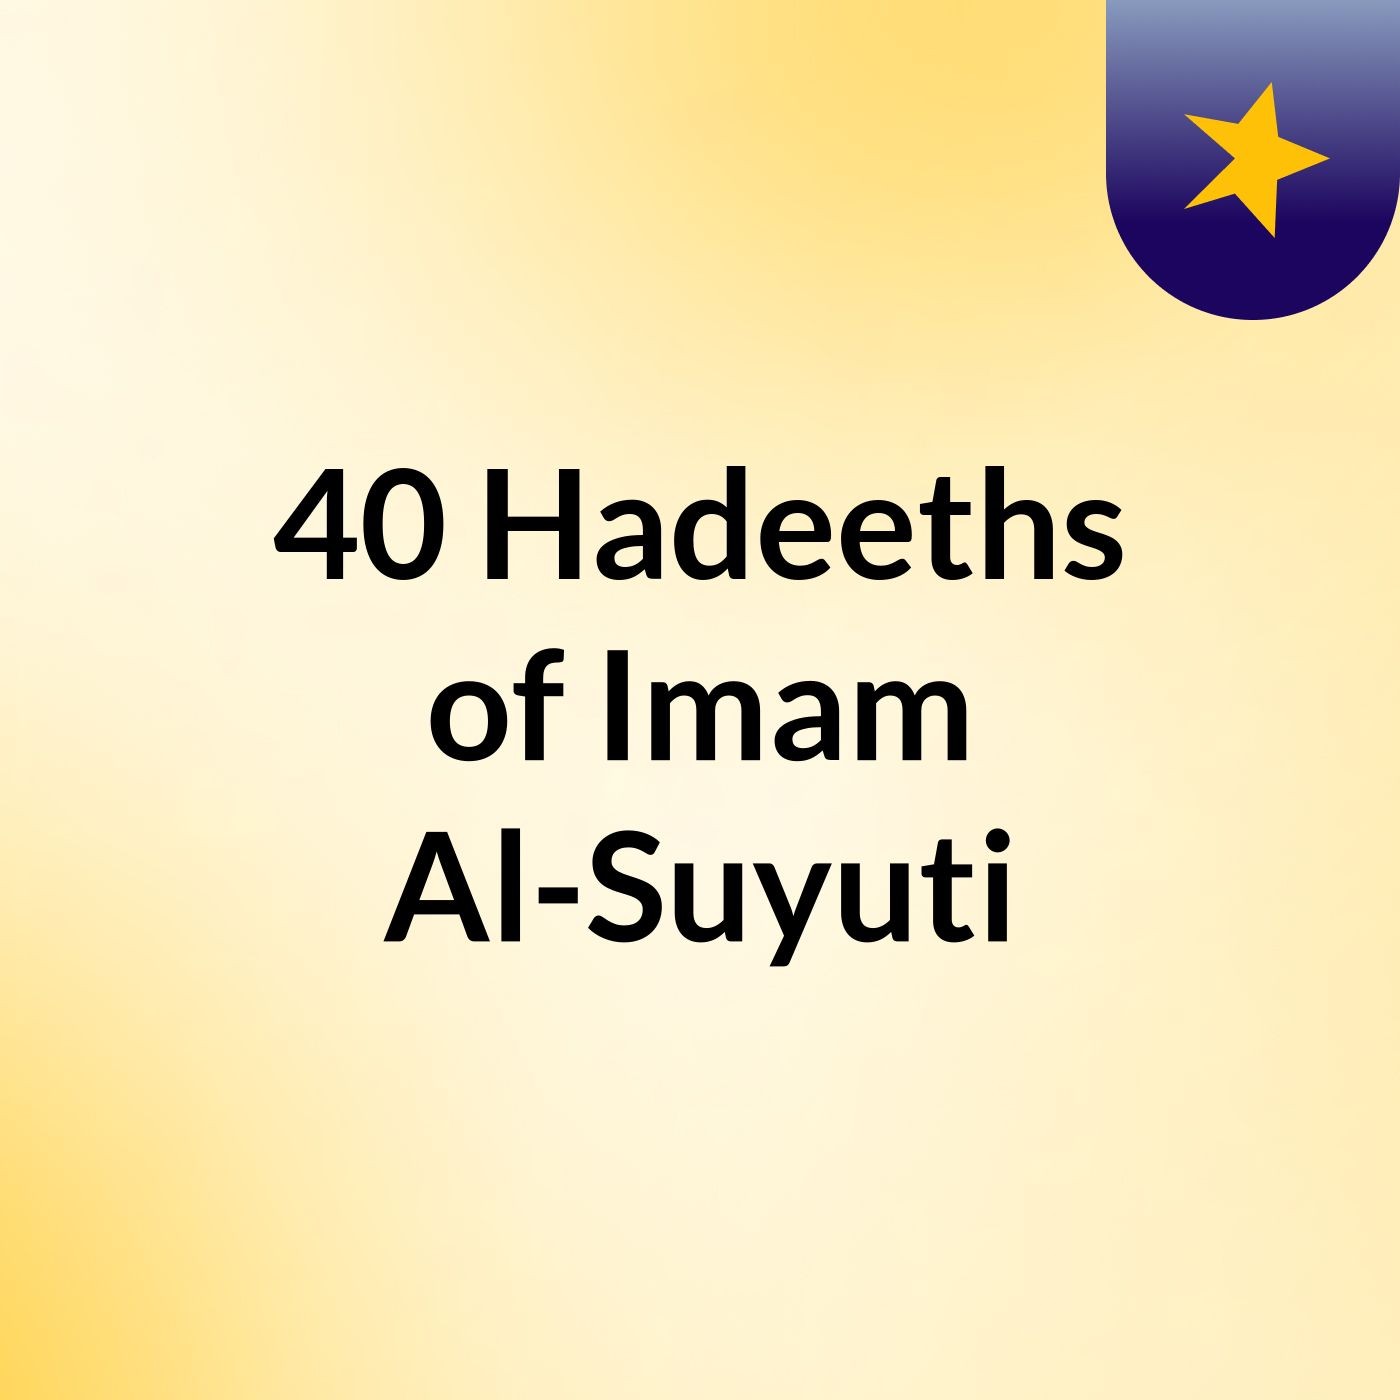 40 Hadeeths of Imam Al-Suyuti - Day 2